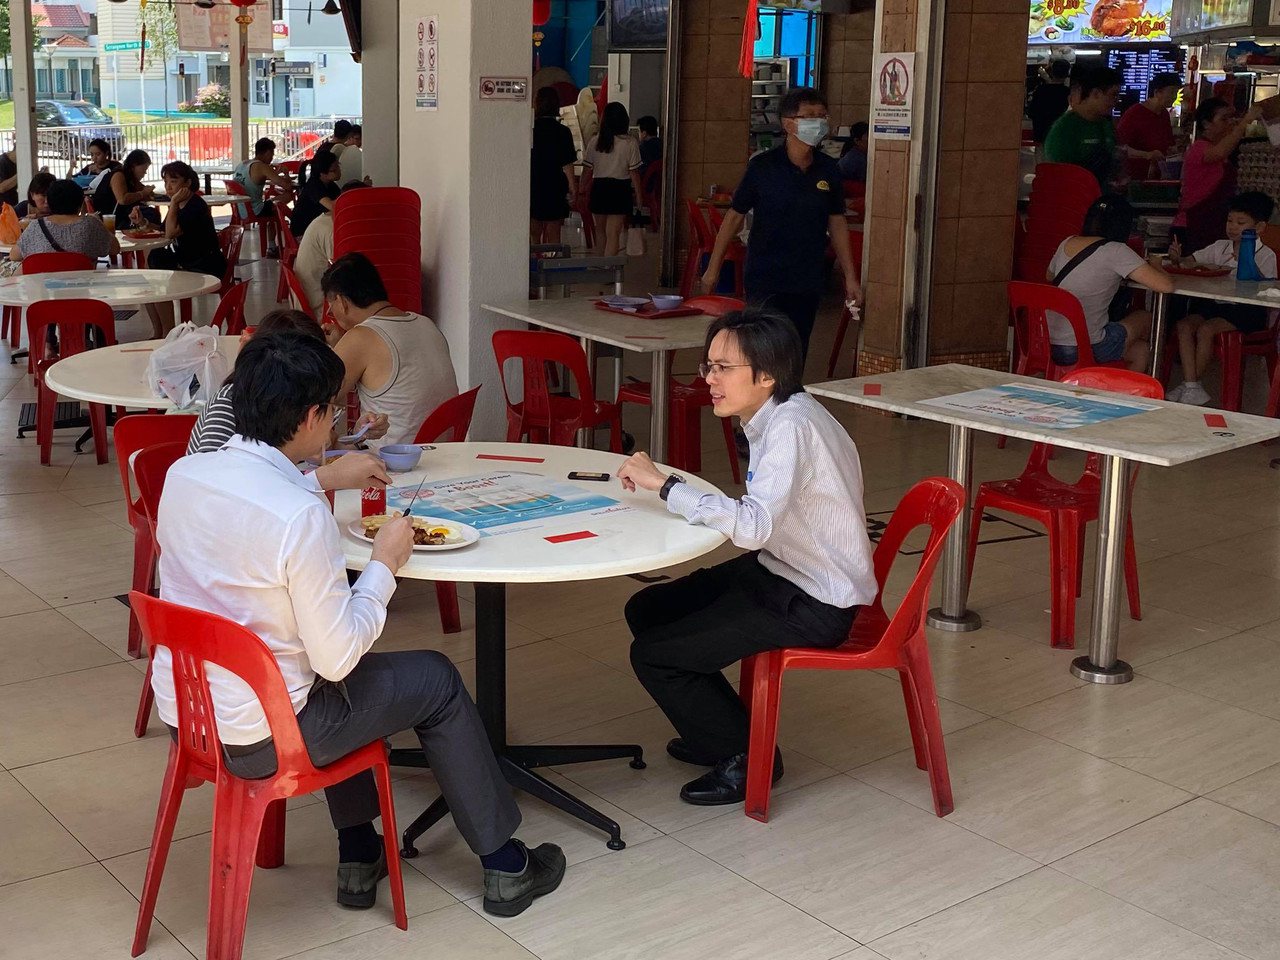 新加坡規定社交距離，但就算規定吃飯距離，朋友和伴侶還是可以坐在一起用餐。

圖／阿比提供